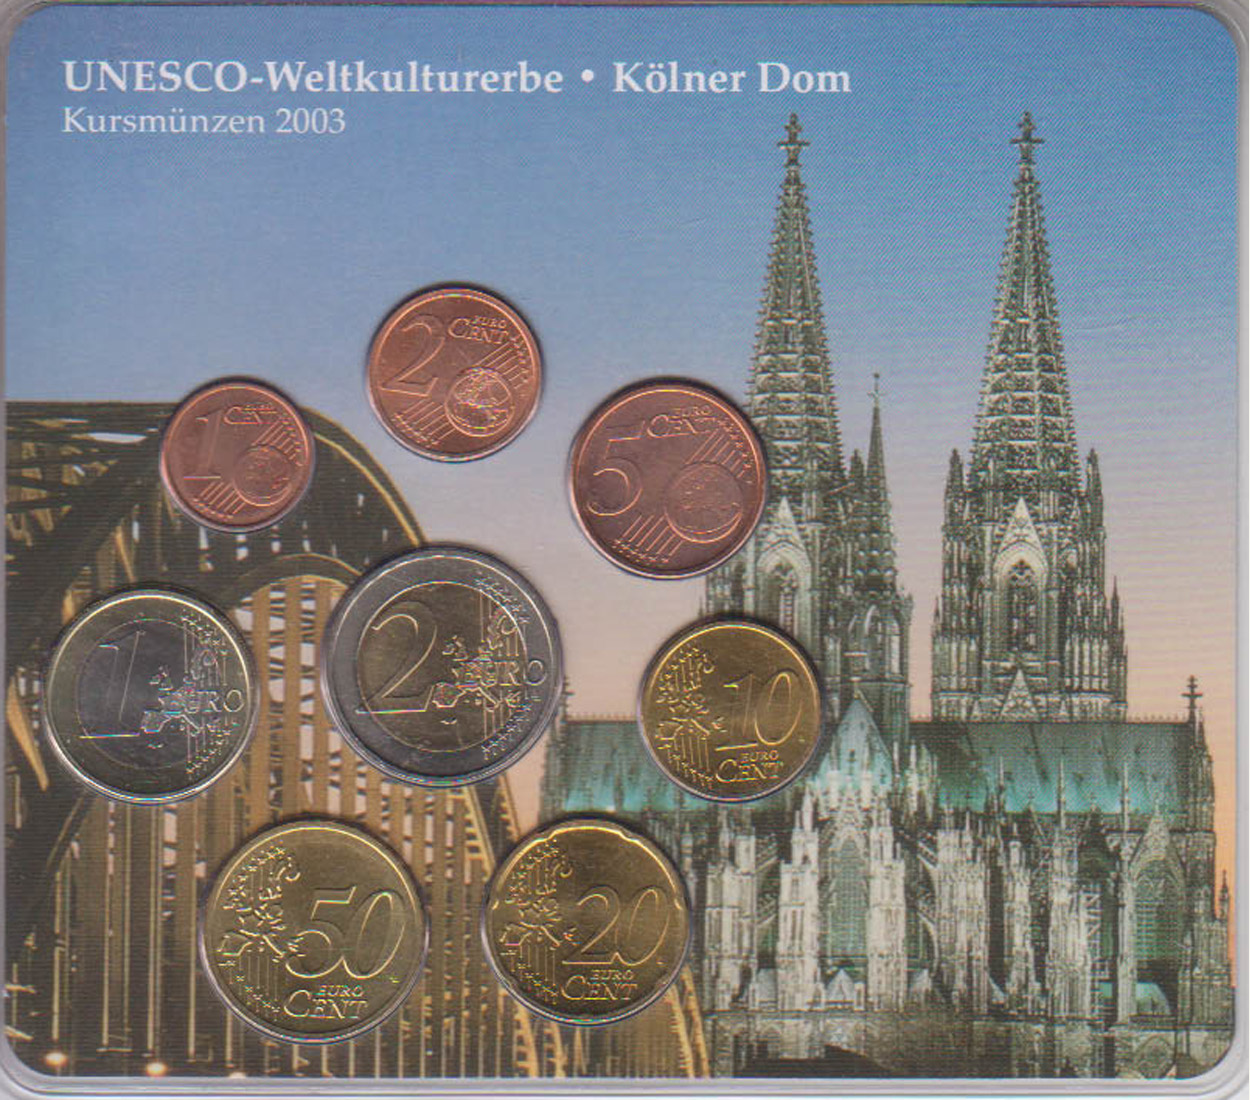  Sonder-KMS BRD mit *UNESCO-Weltkulturerbe - Kölner Dom* 2003 nur 500 Stück!   